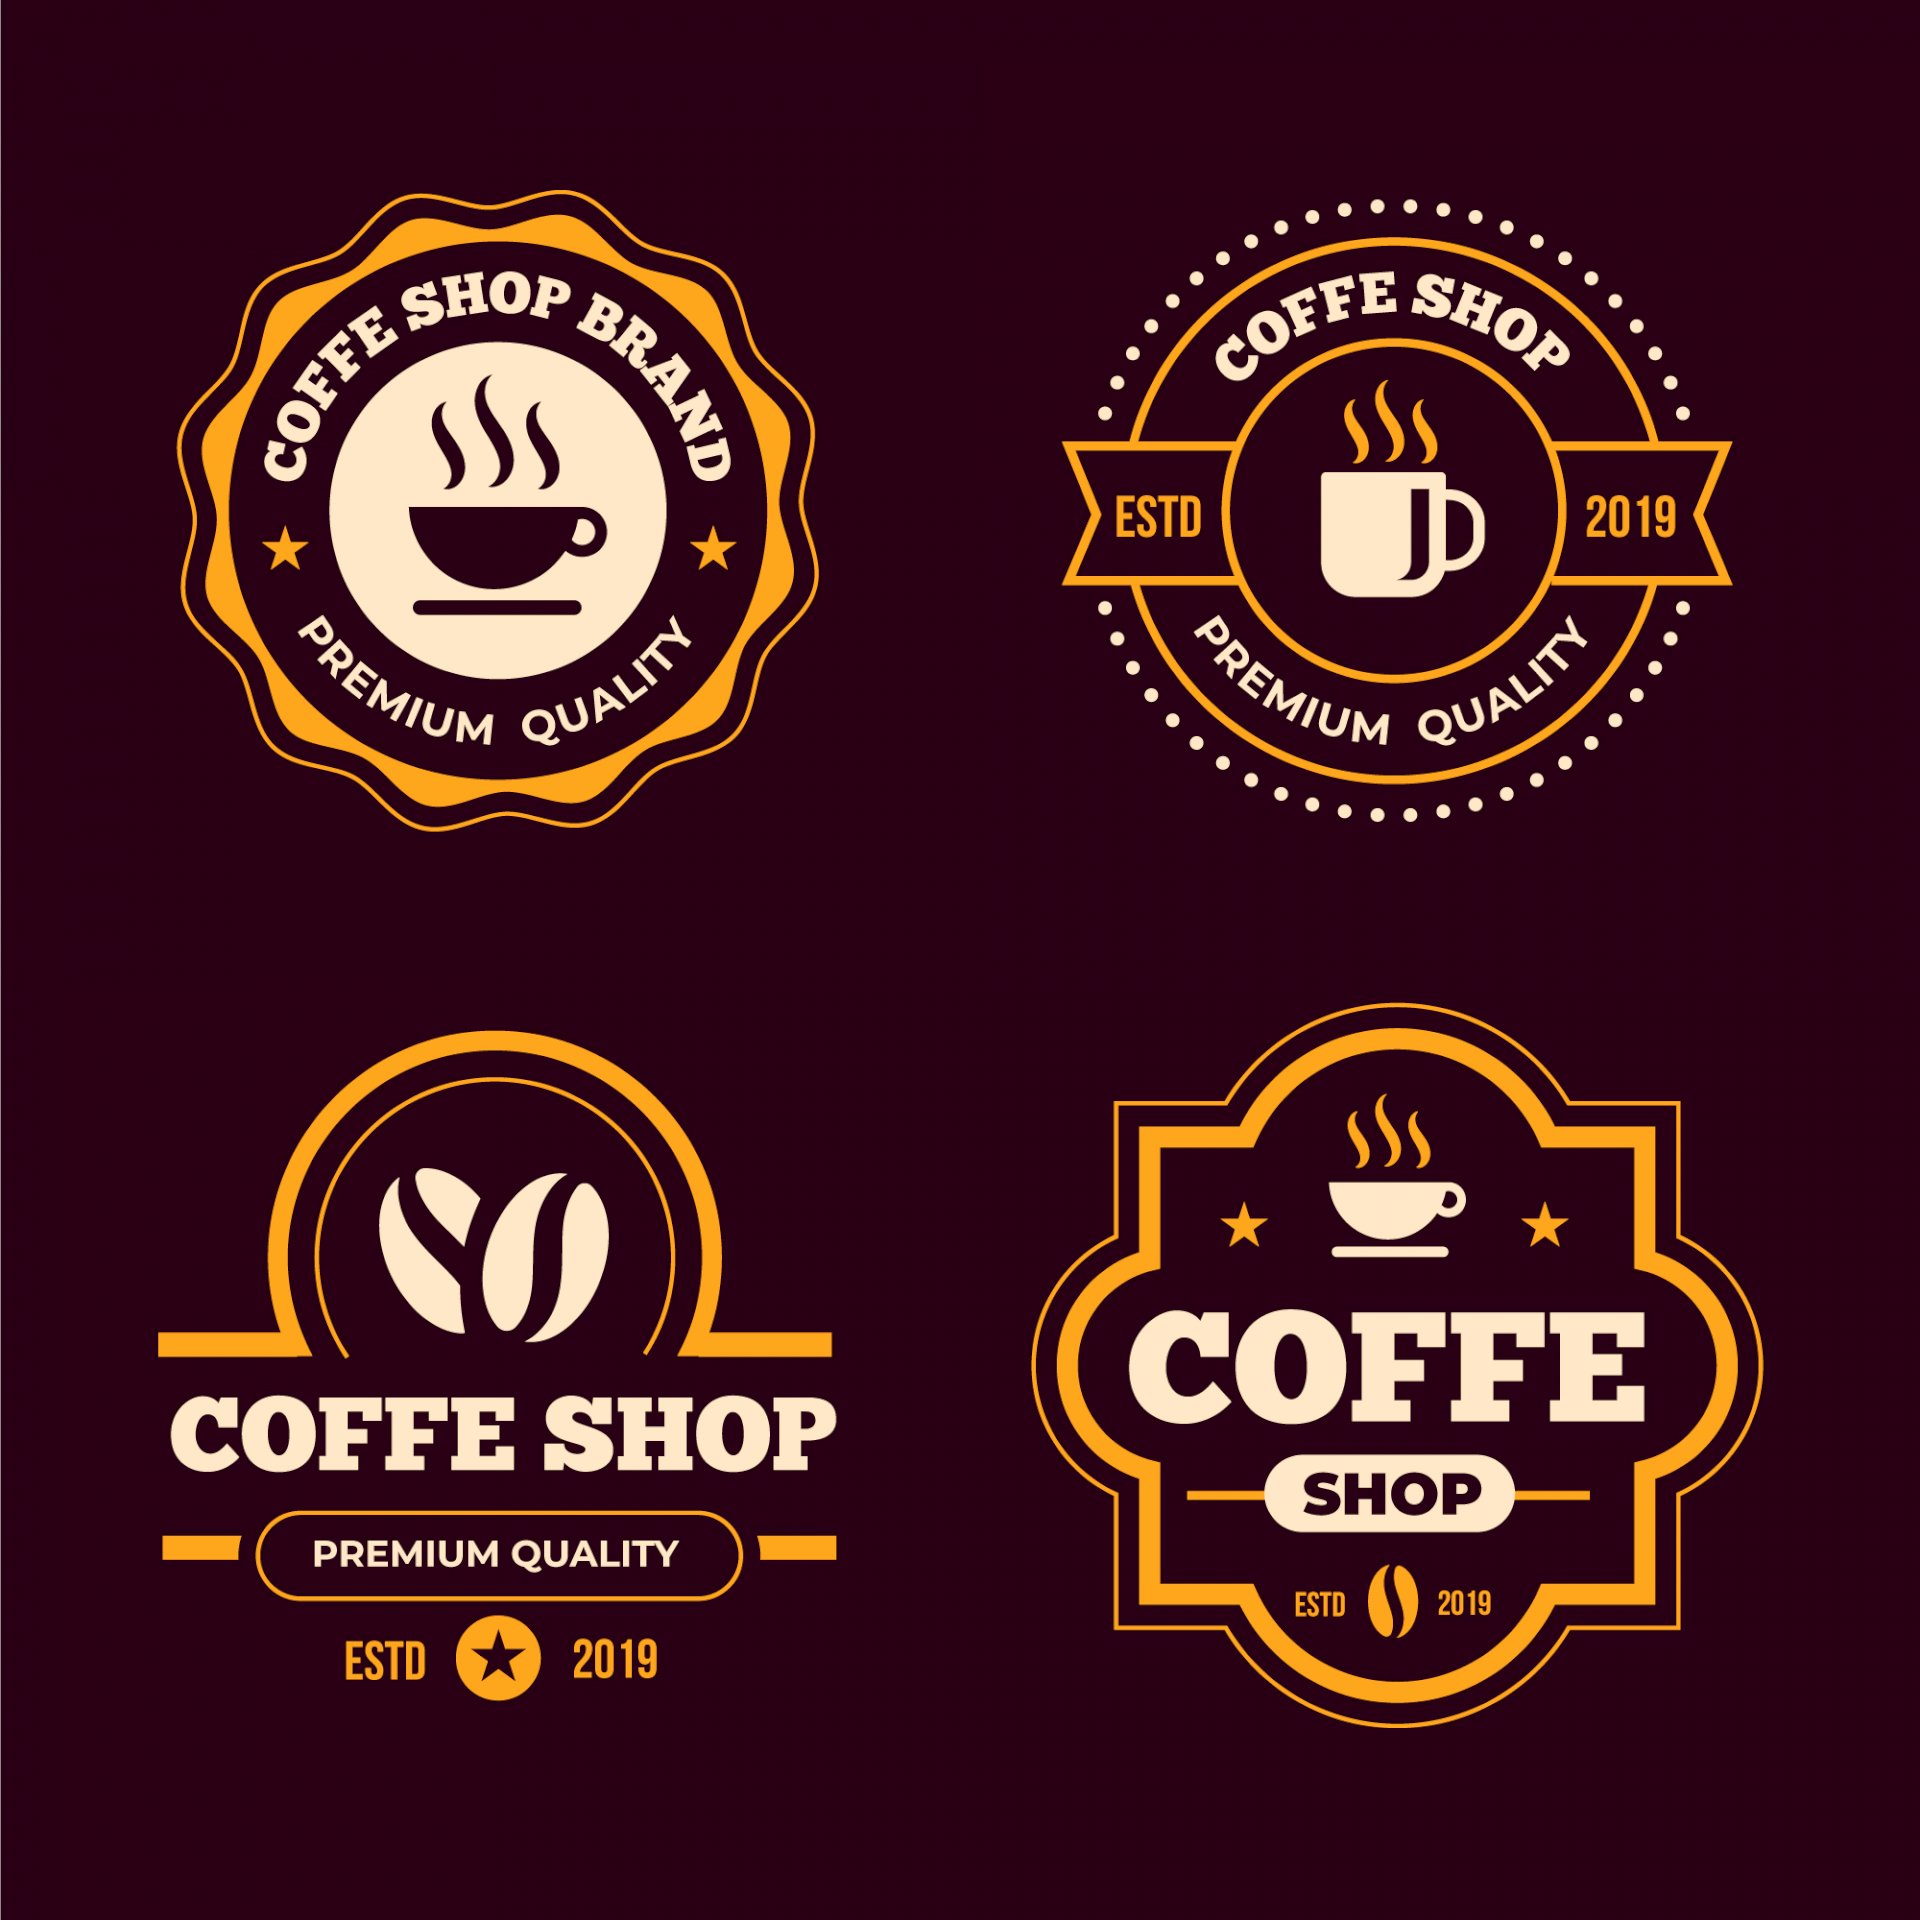 Tổng hợp vector cafe logo đẹp mắt và sáng tạo cho ngành giải trí và thương mại